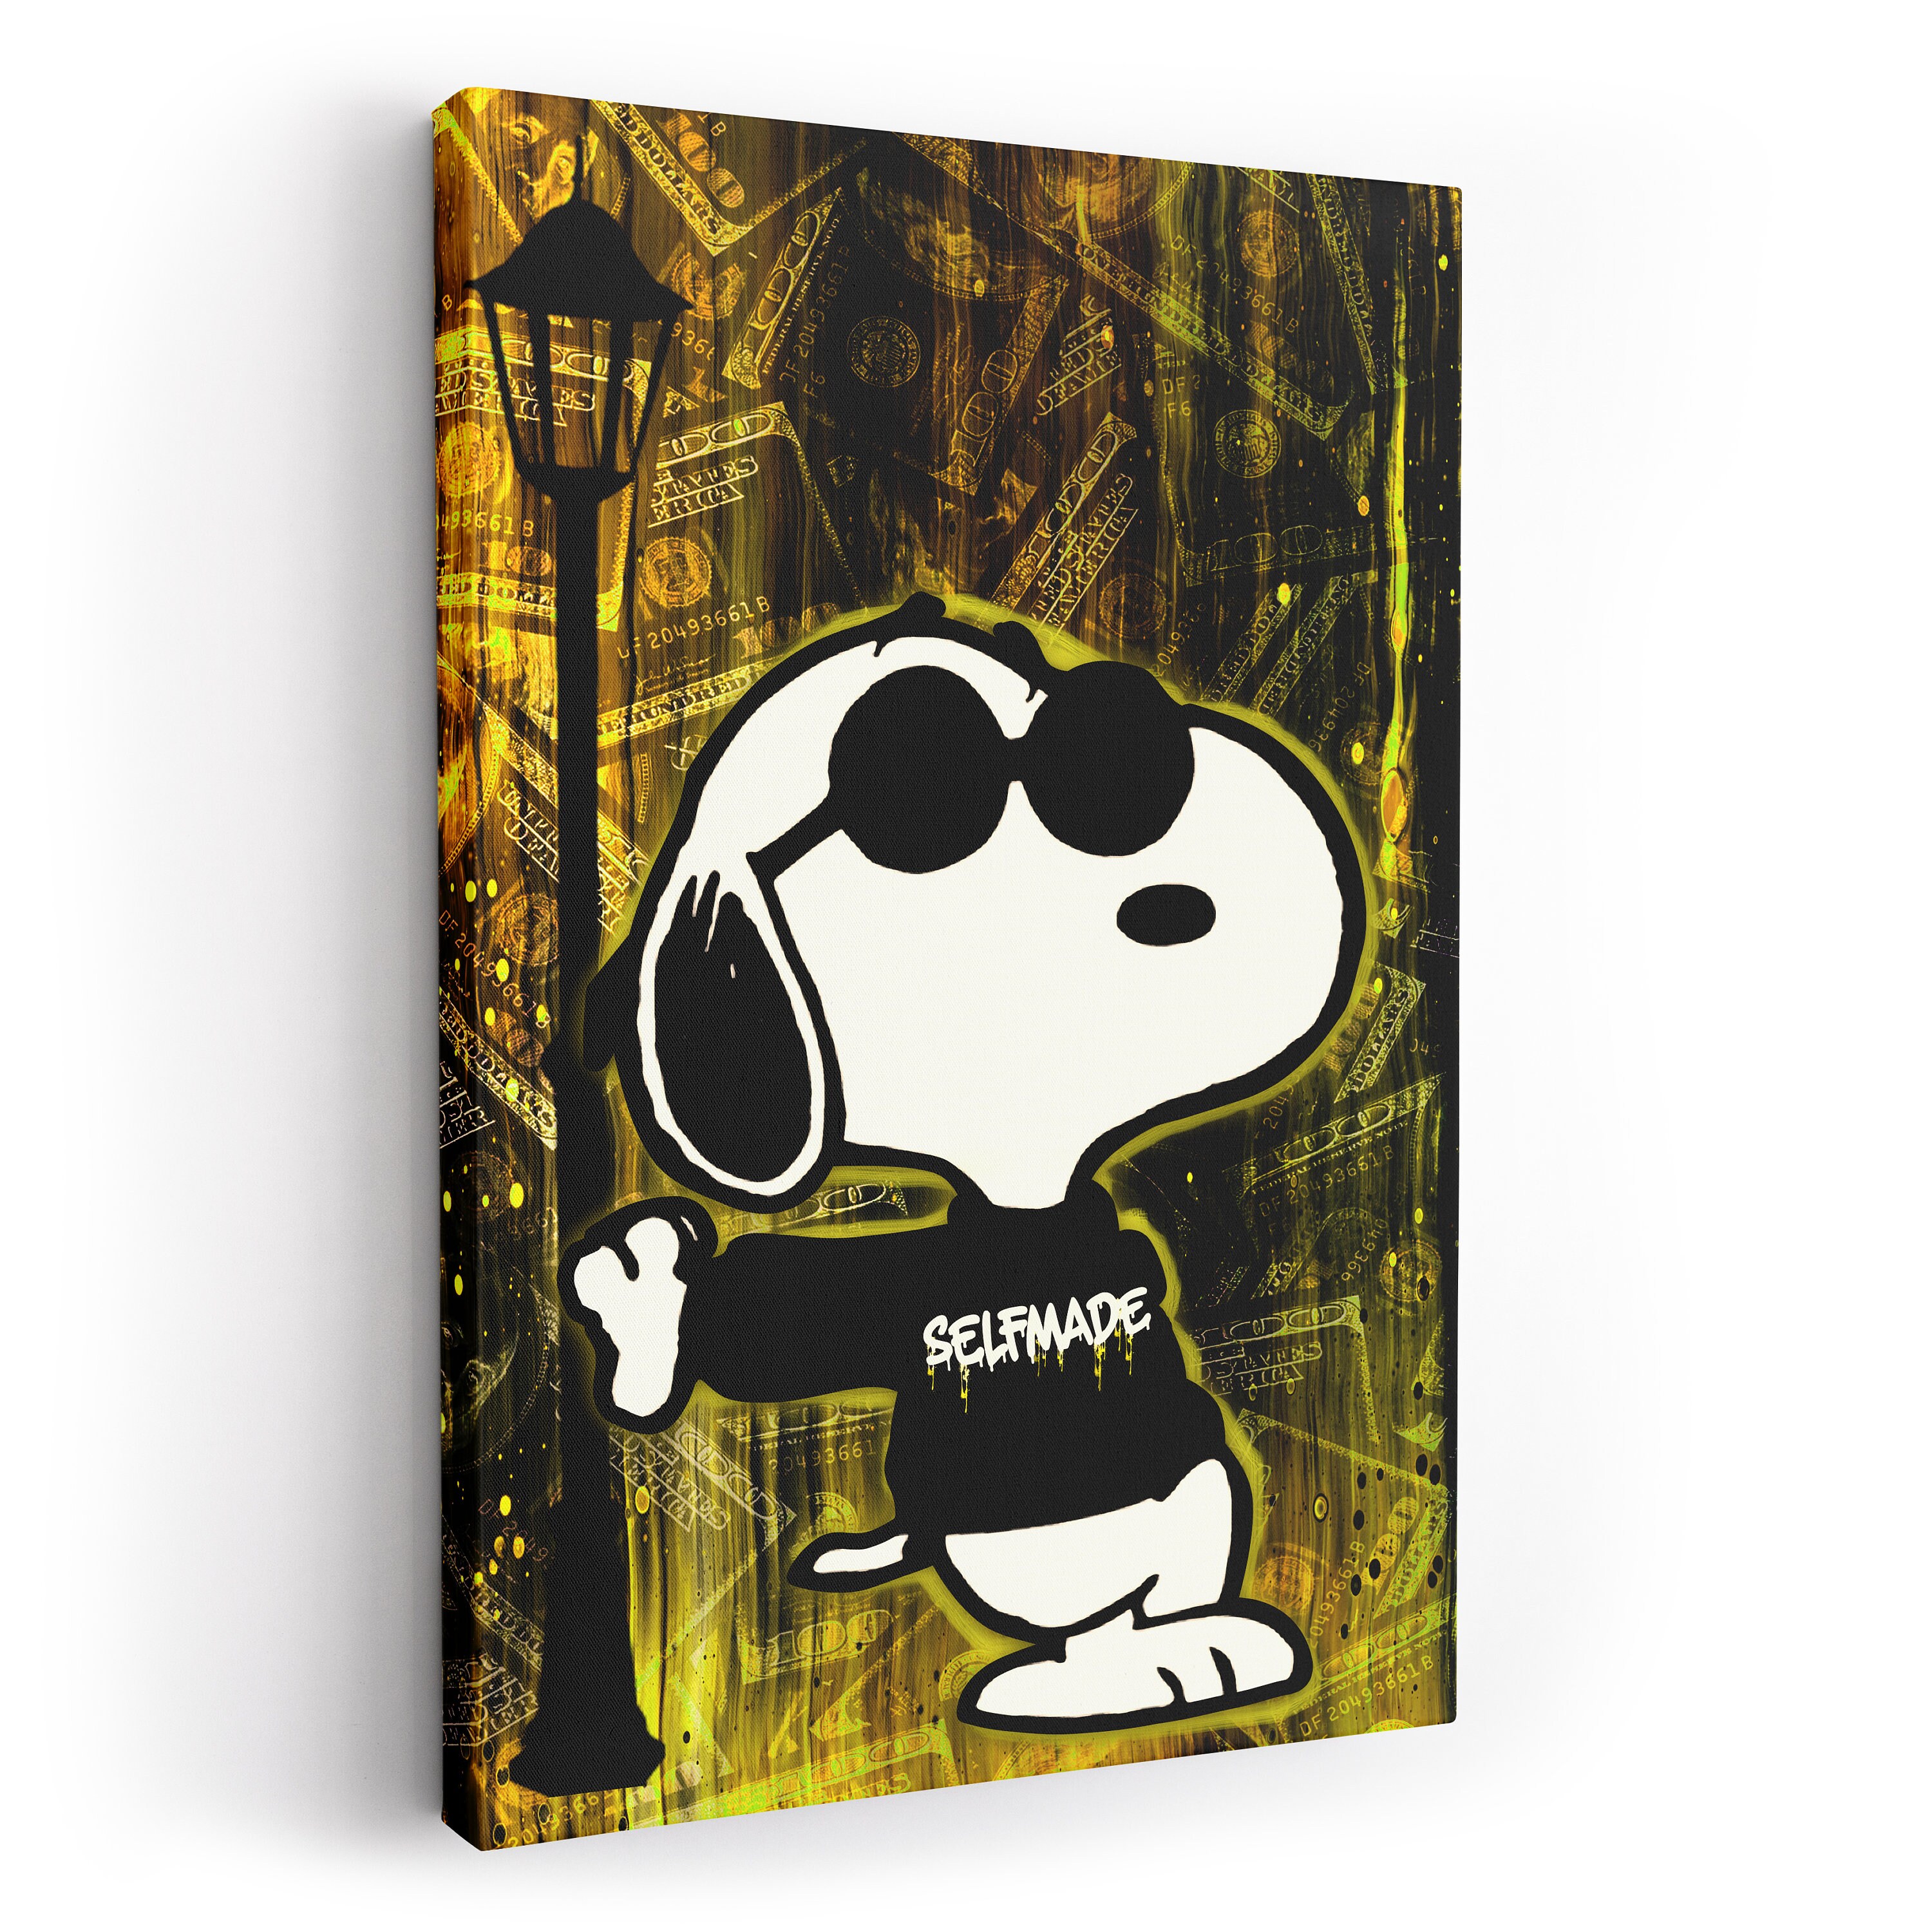 Mattschwarzer oder weißer Snoopy im Liegen, 14 x 5,1 cm